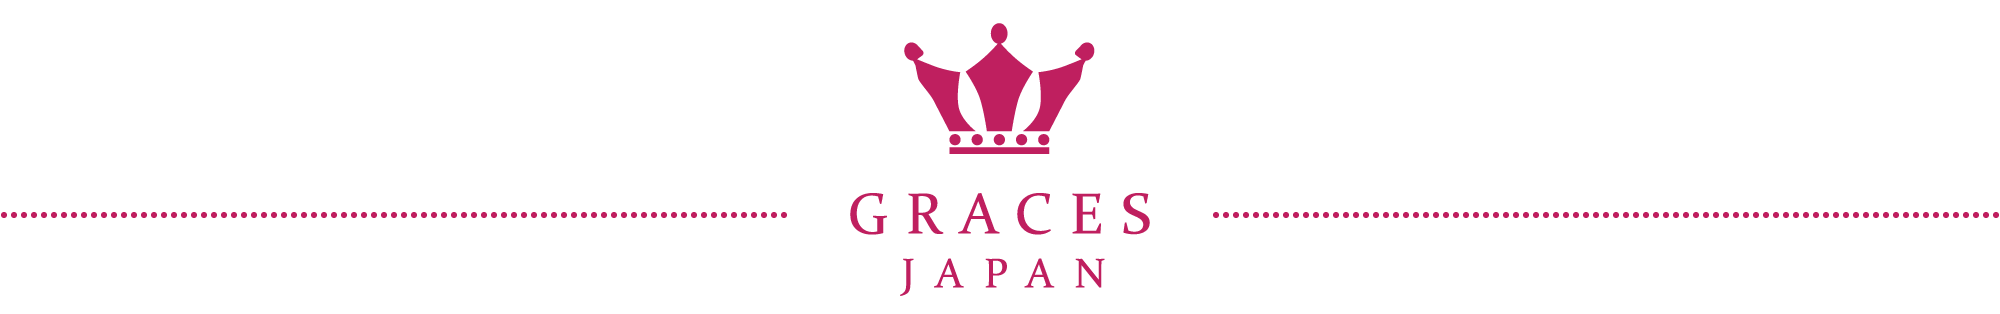 GRACES JAPAN